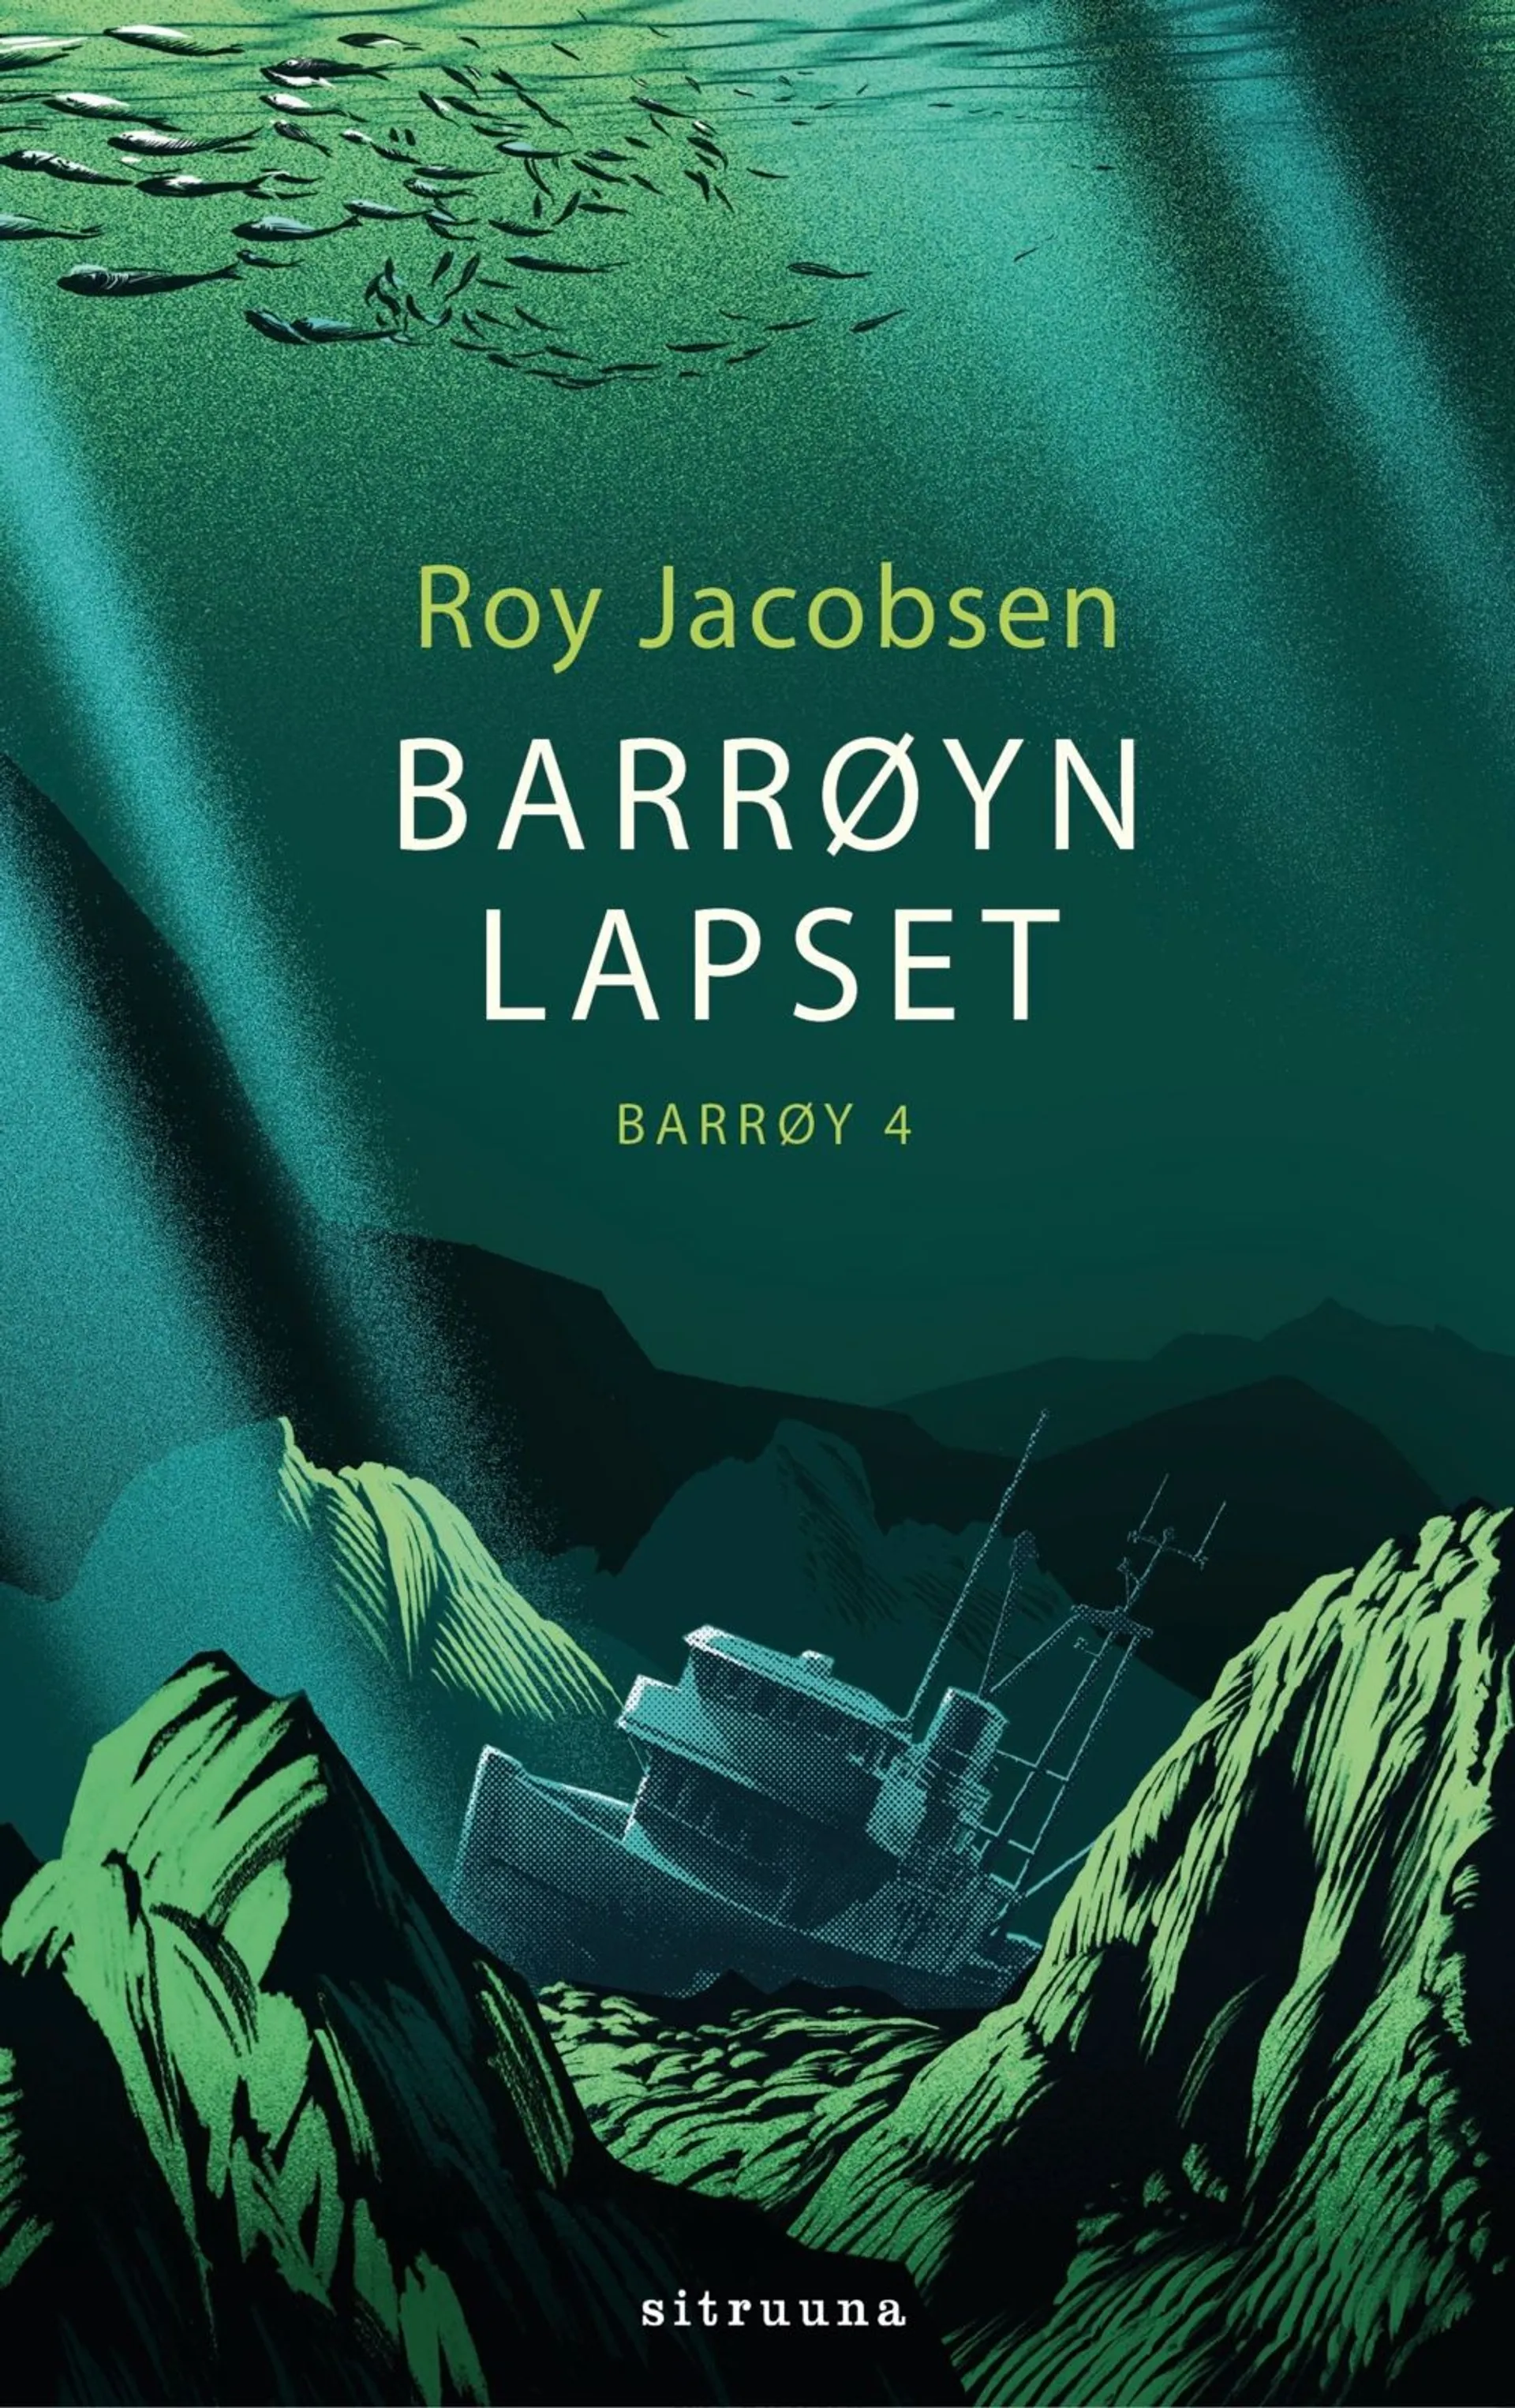 Jacobsen, Barrøyn lapset